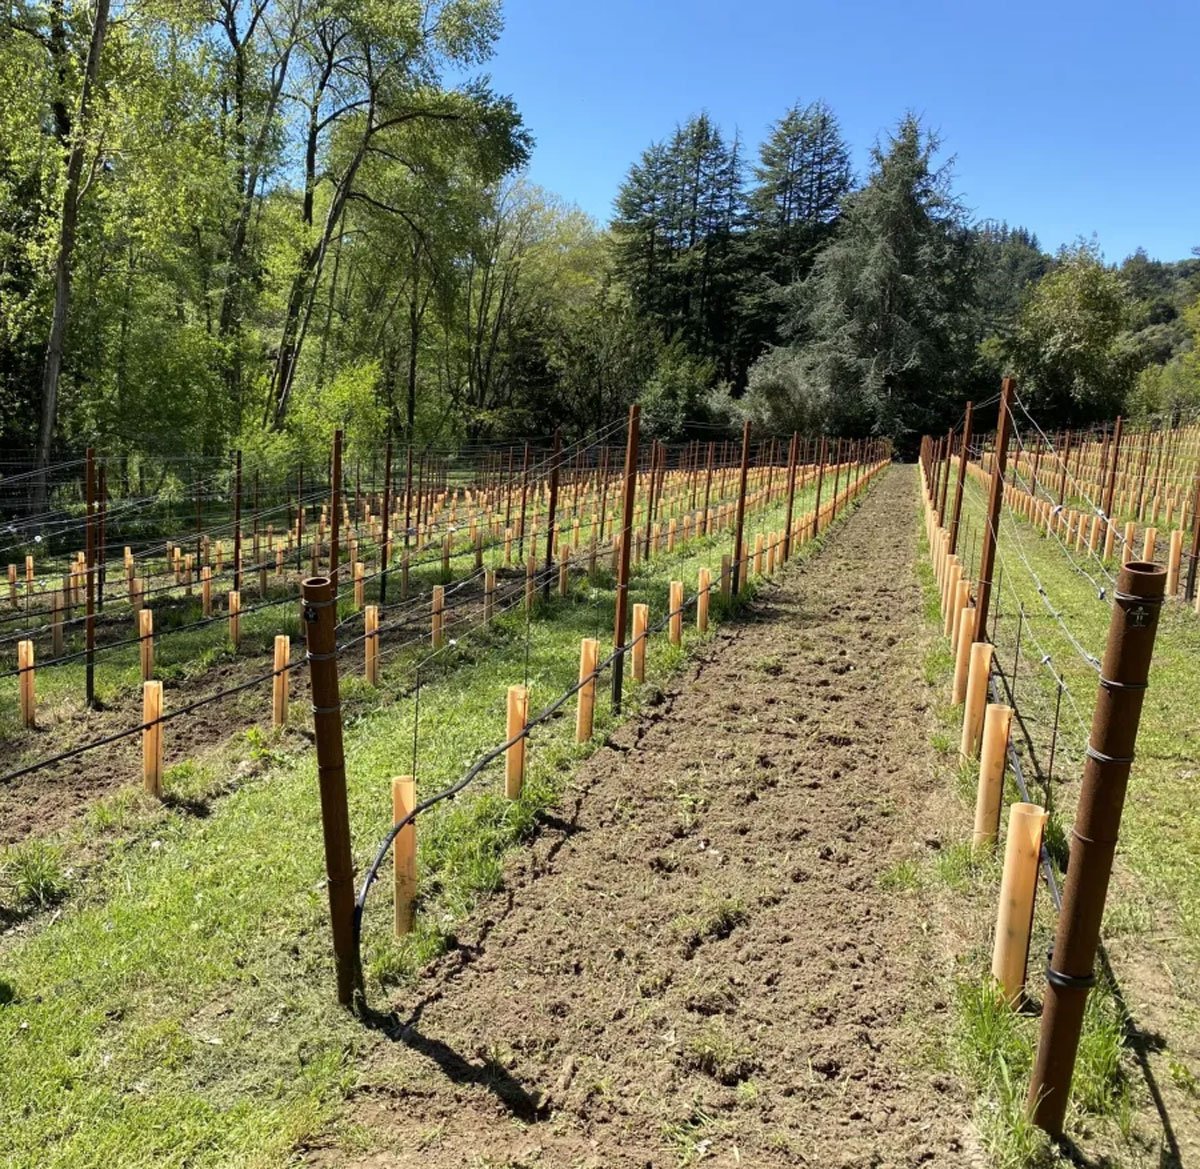 A freshly planted 3P Wines vineyard